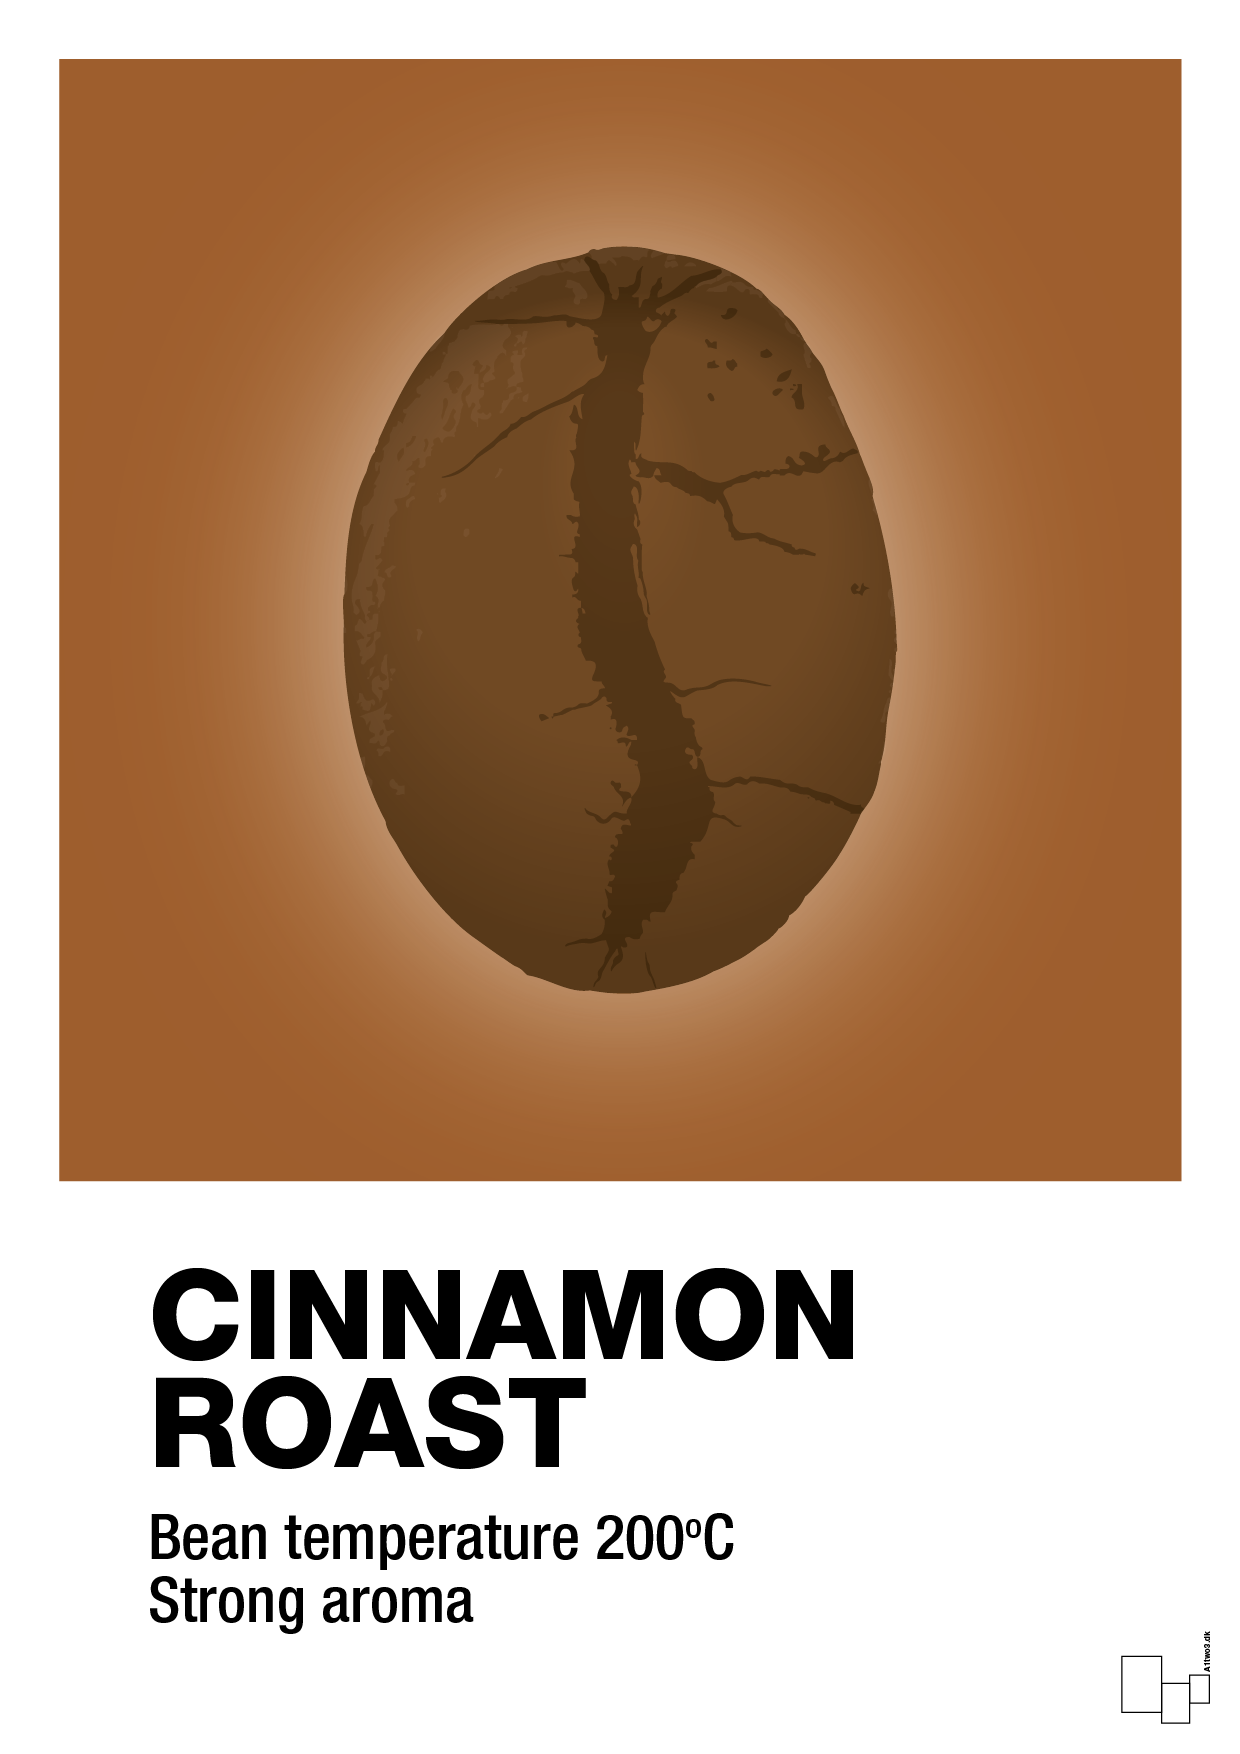 cinnamom roast - Plakat med Mad & Drikke i Cognac